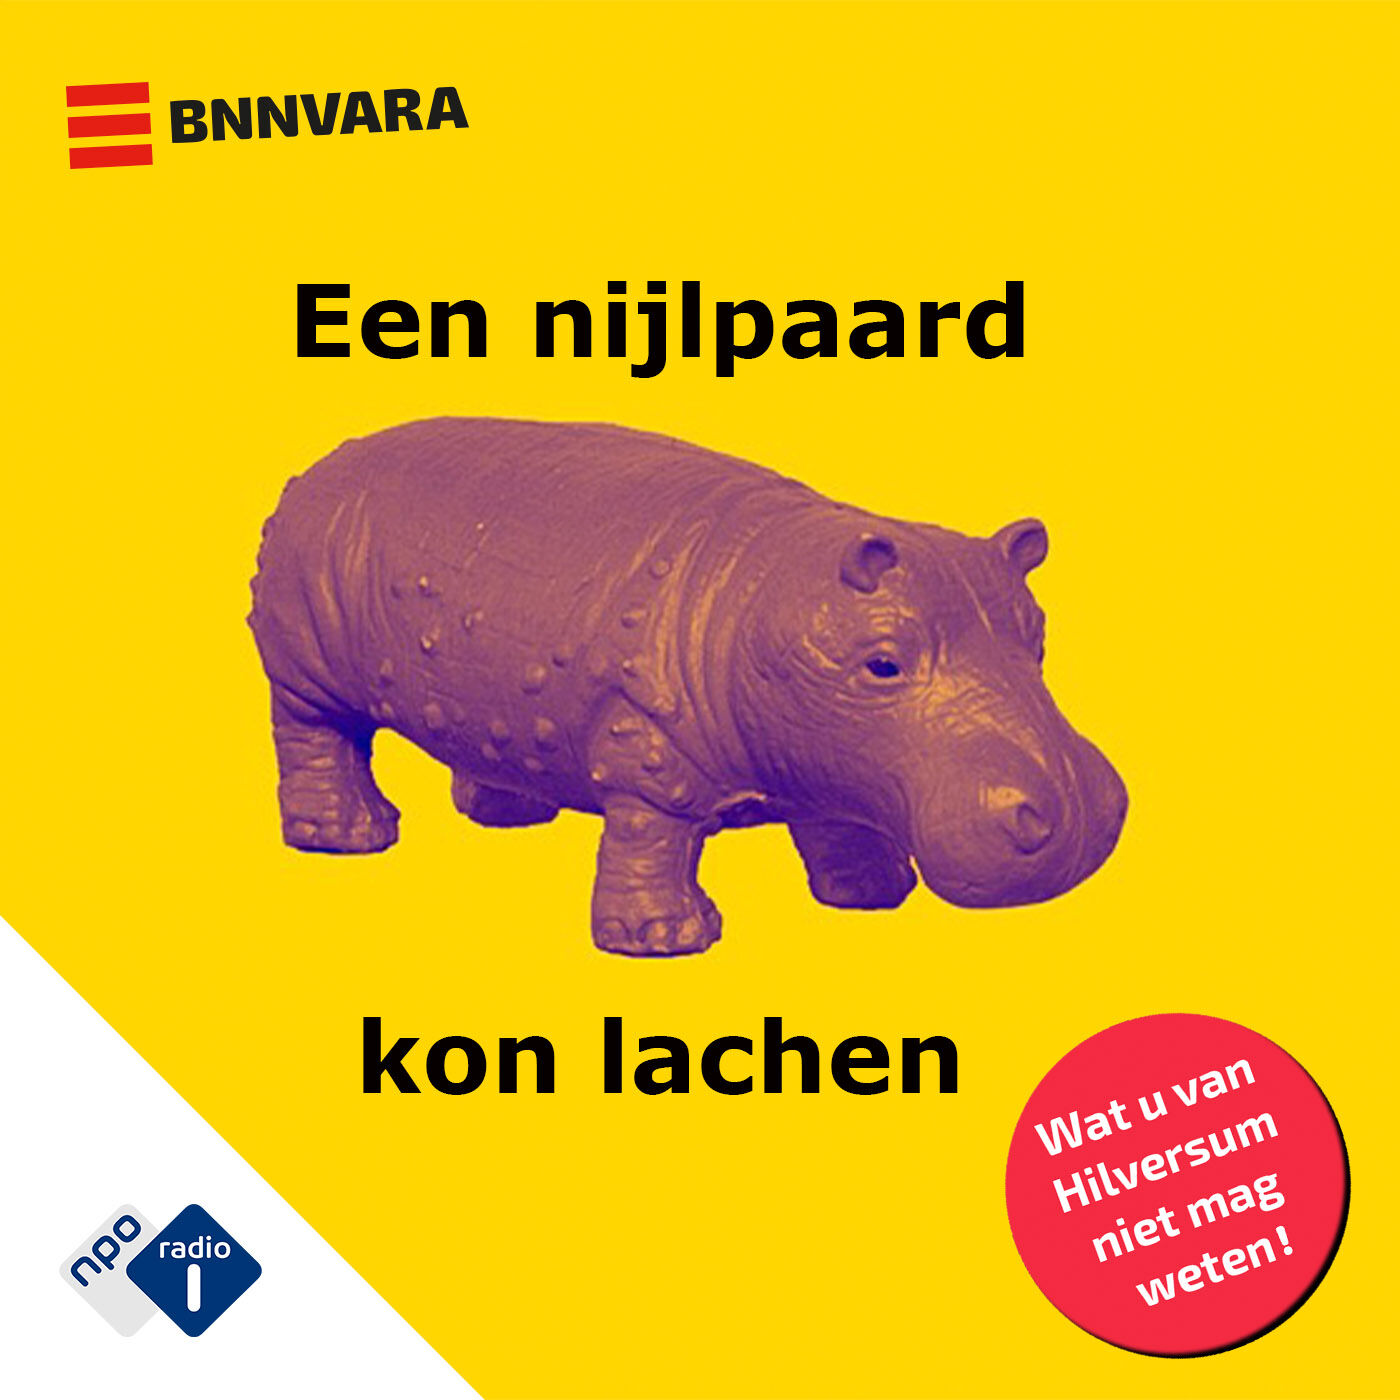 Een nijlpaard kon lachen logo